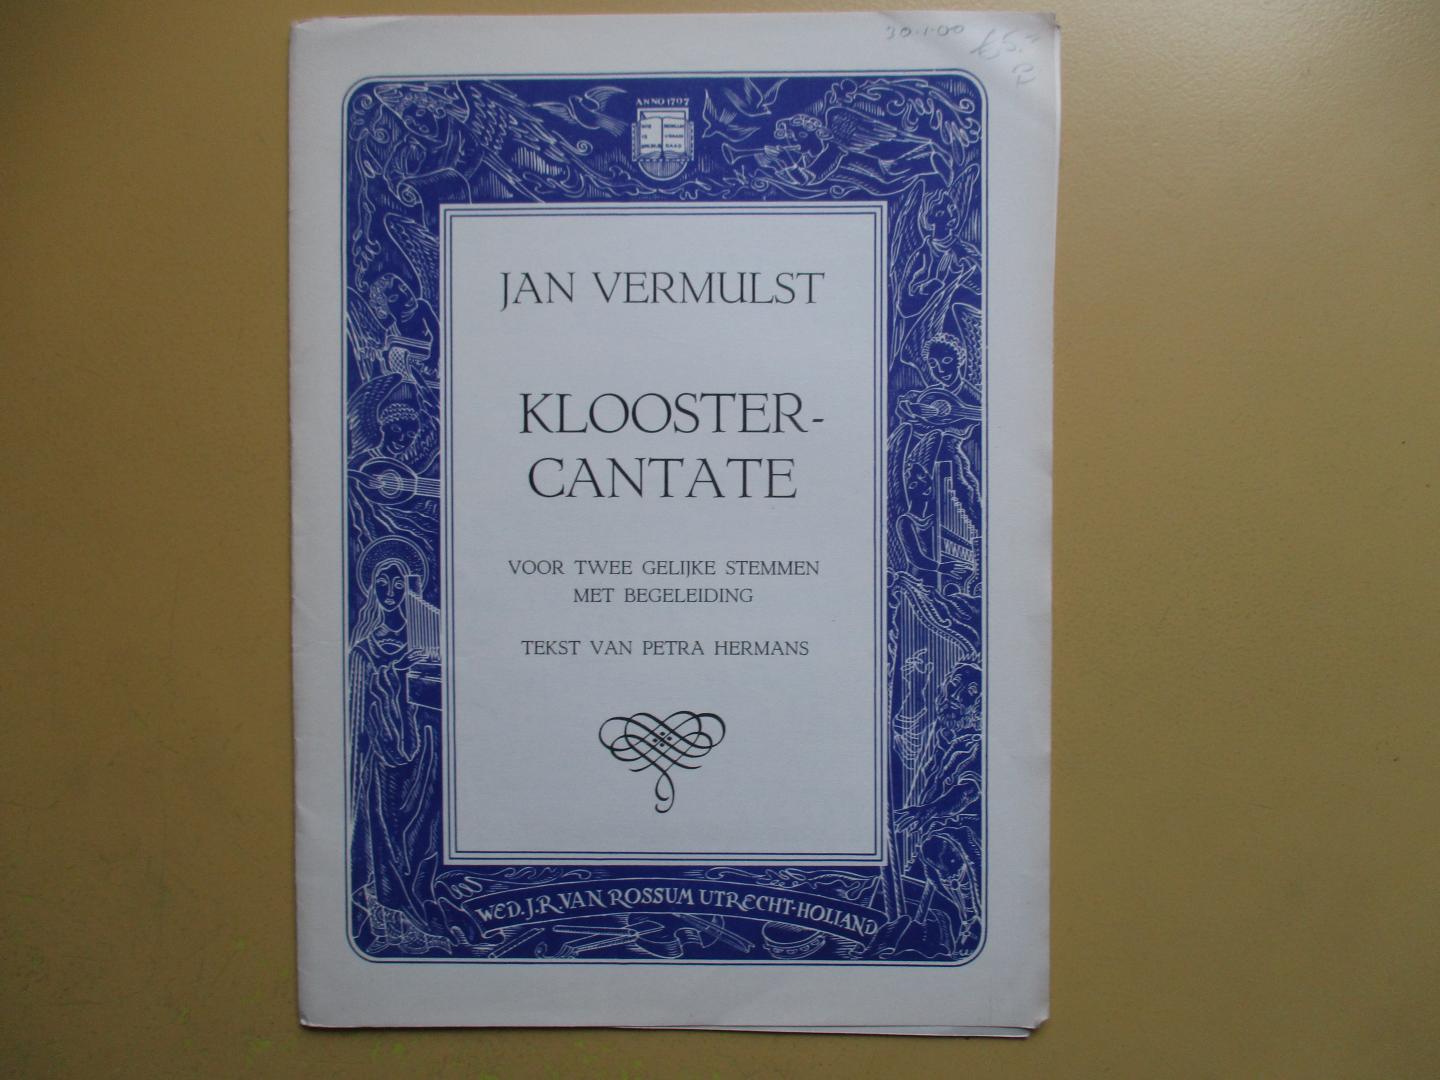 Vermulst, Jan - muziek / Petra Hermans - tekst - Kloostercantate voor twee gelijke stemmen met begeleiding